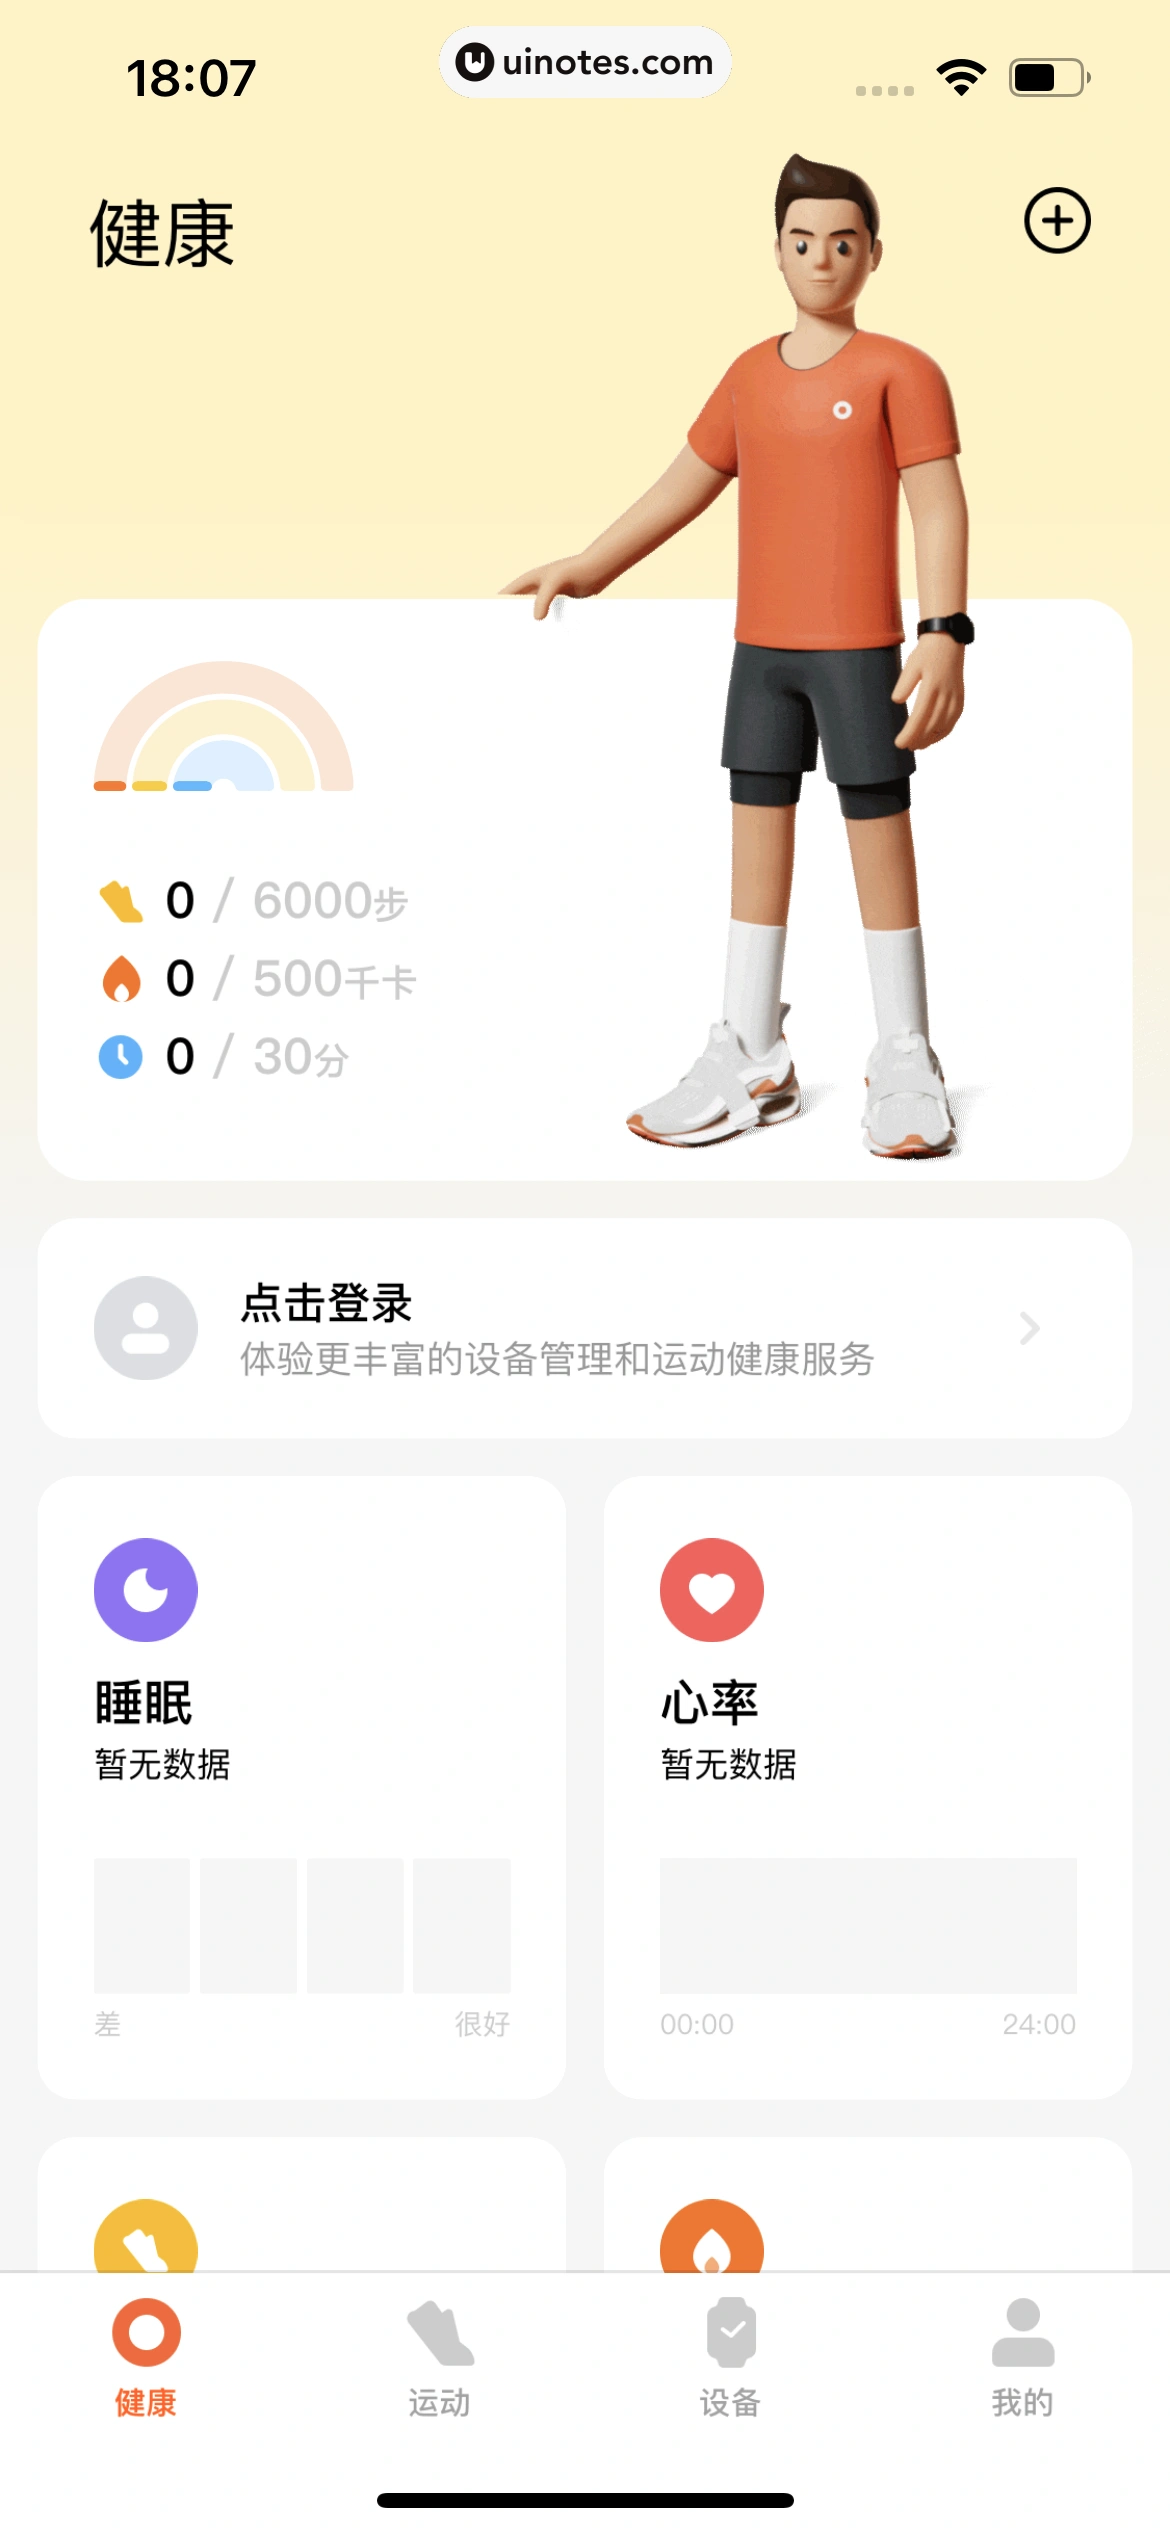 小米运动健康 App 截图 014 - UI Notes